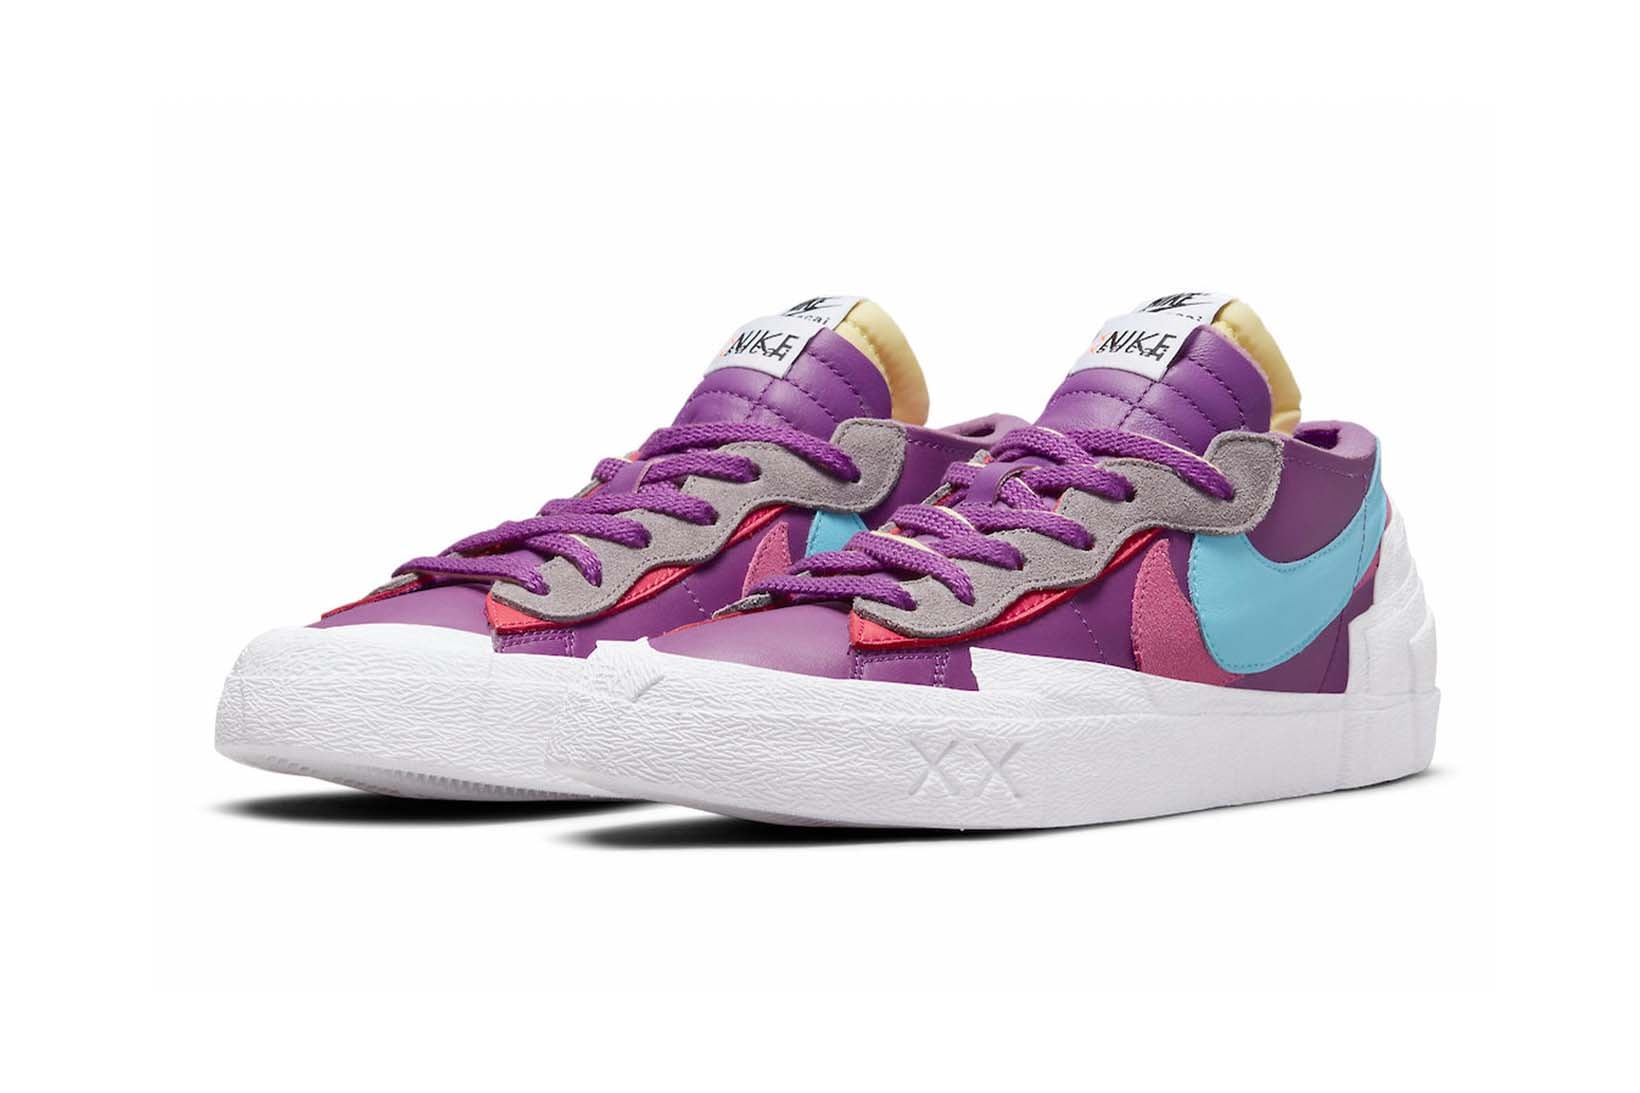 Nike x sacai x KAWS Blazer Low Purple Dusk Price Release Date Collaboration